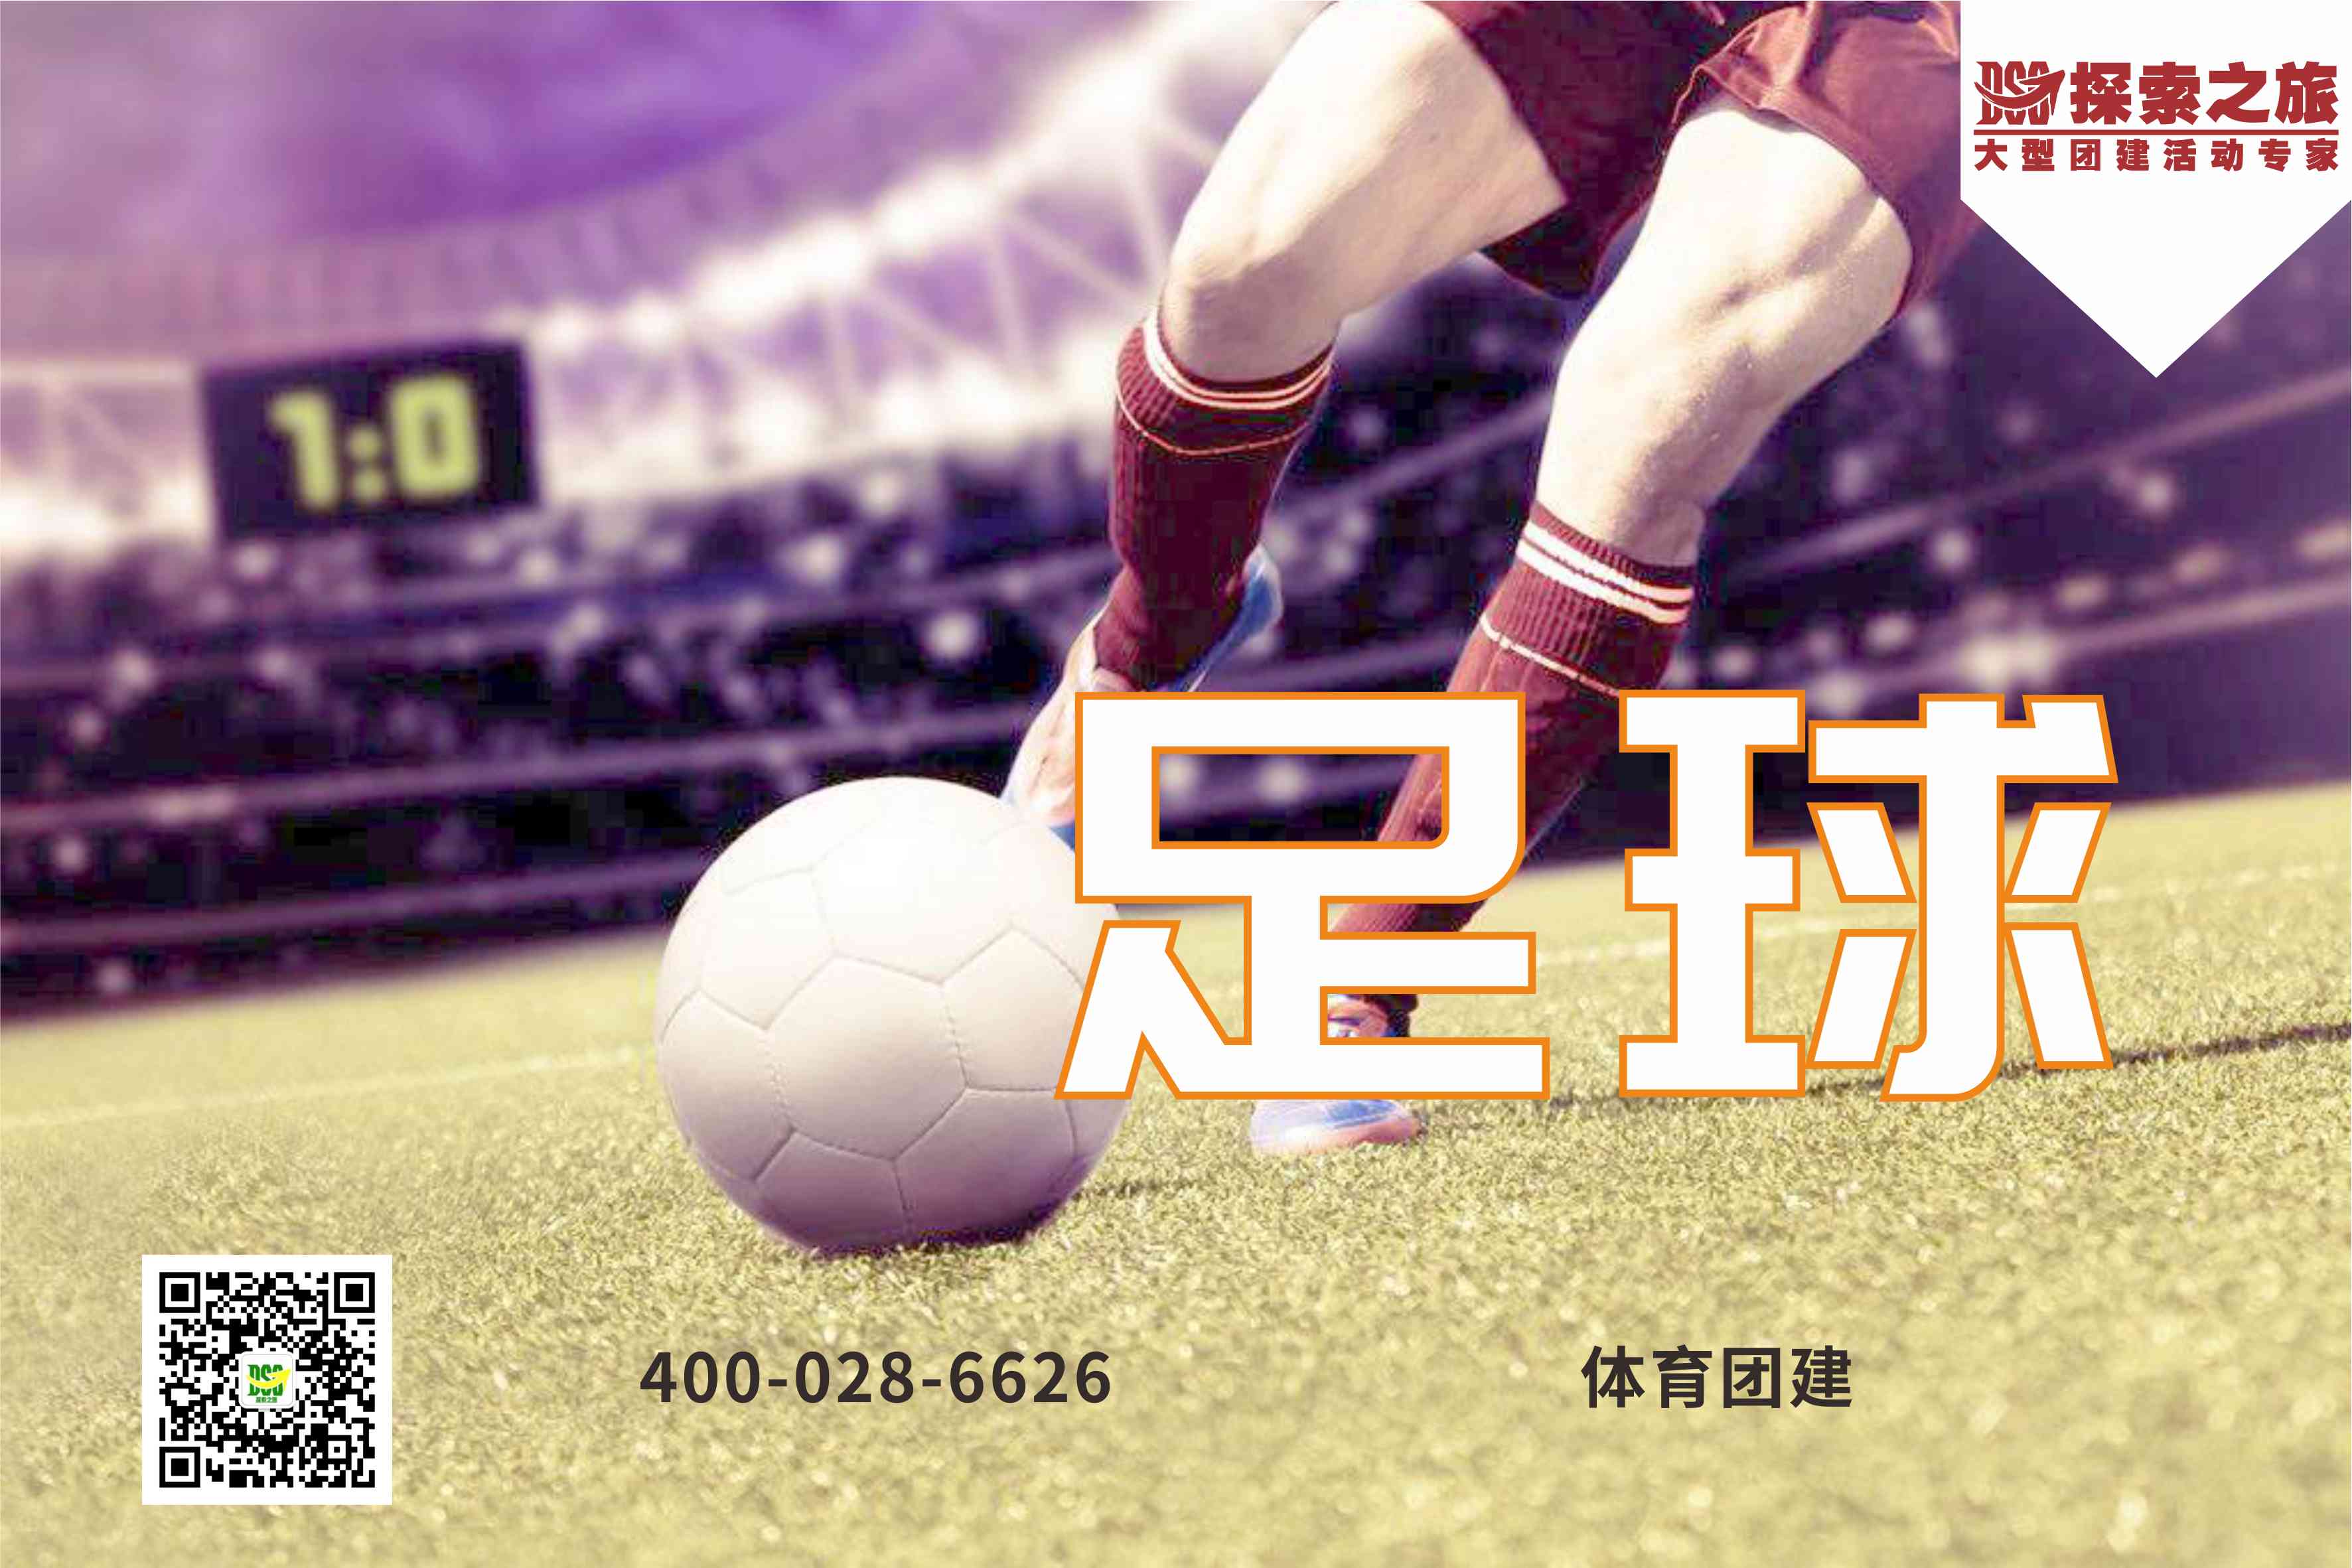 【大型企業賽事】足球活動方案